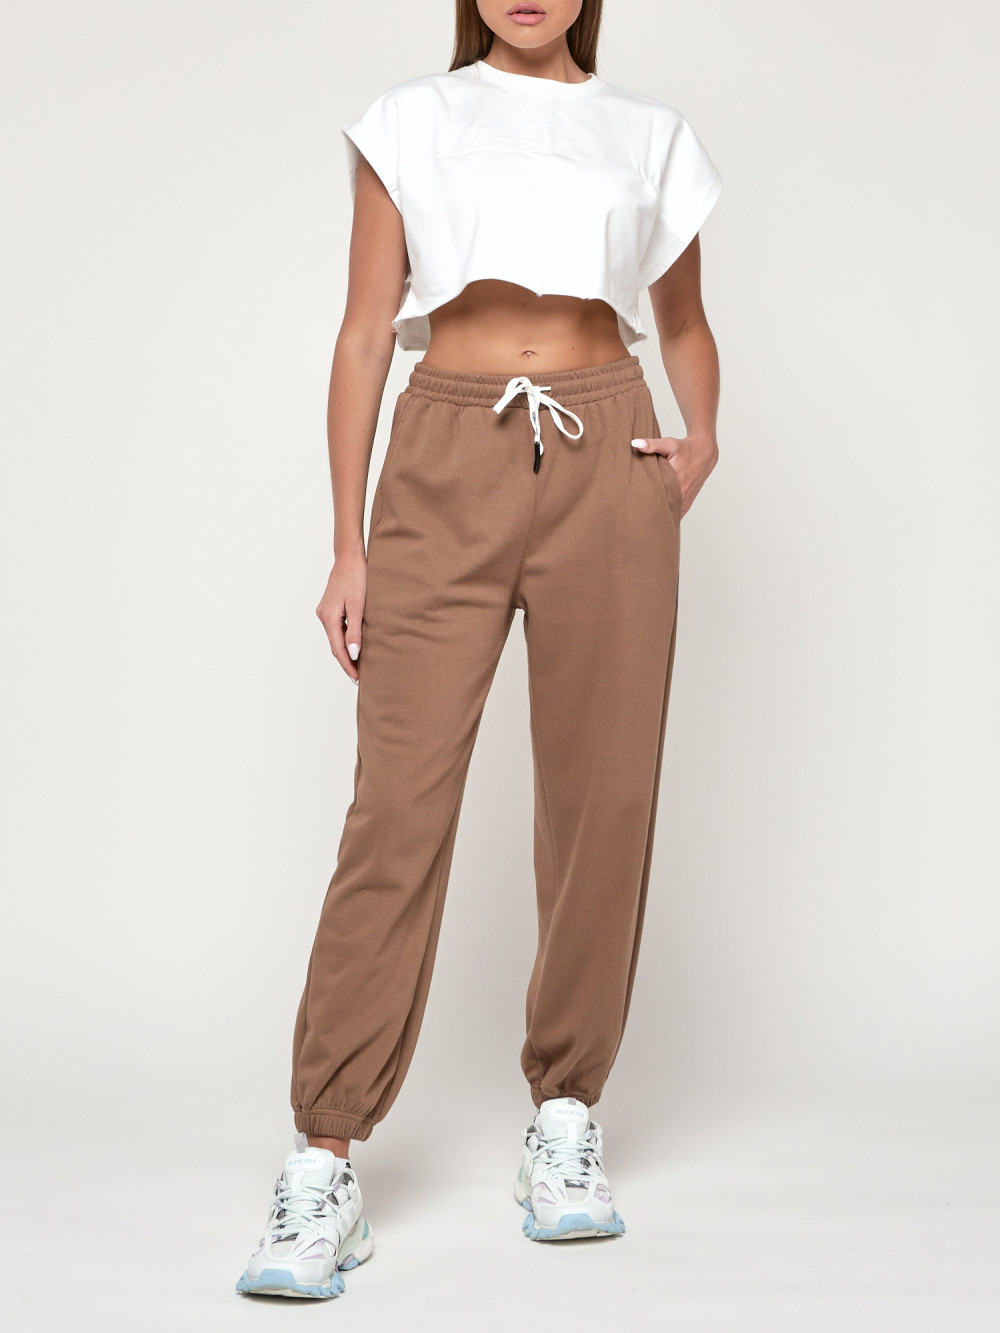 Спортивные брюки женские NoBrand AD053 коричневые 44 RU